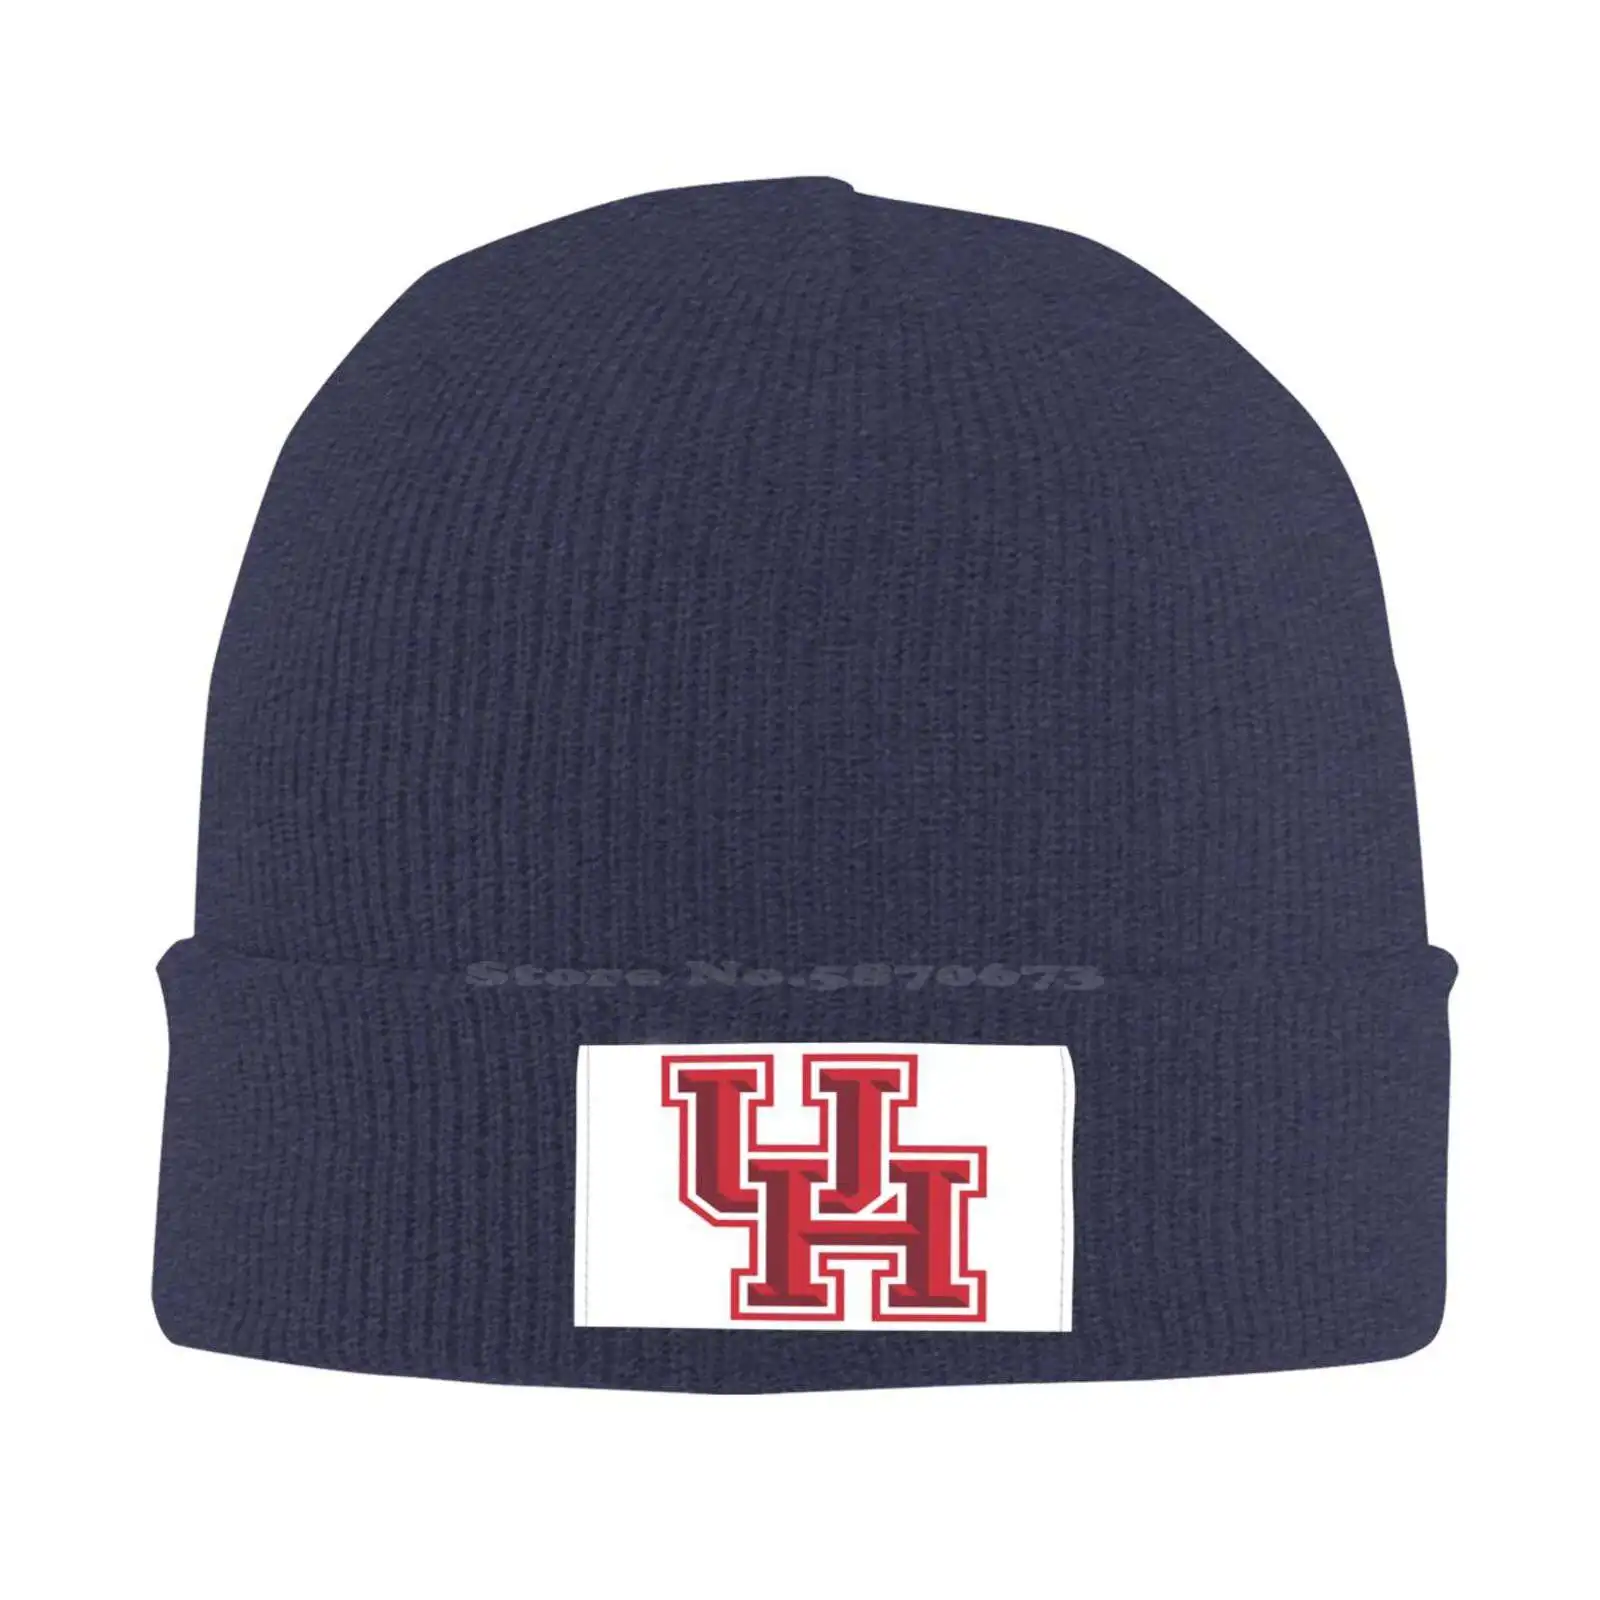 

Модная бейсбольная кепка с логотипом университета Хьюстона, качественная